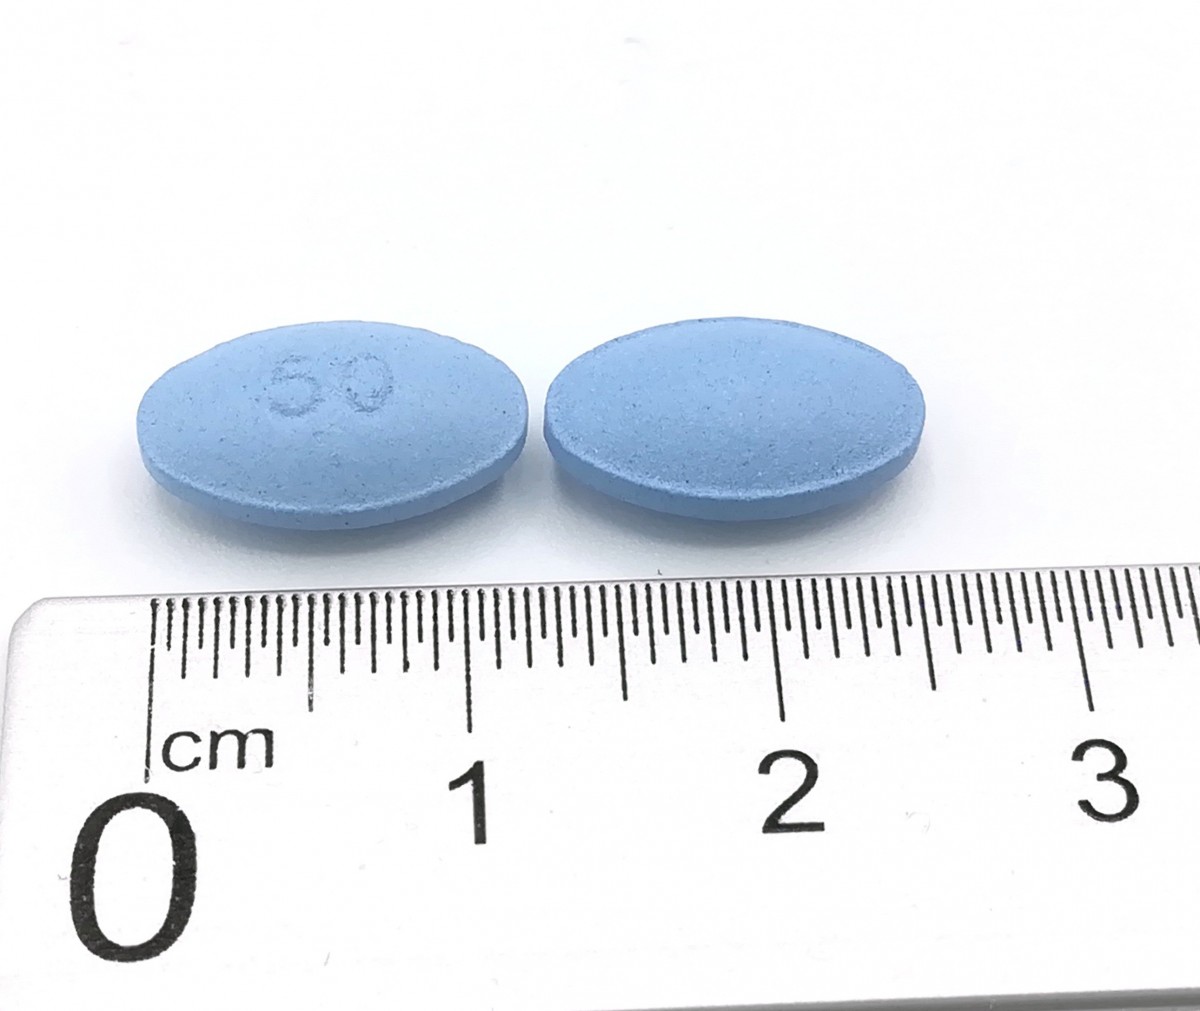 GALOTAM 50 mg COMPRIMIDOS RECUBIERTOS CON PELICULA EFG, 1 comprimido fotografía de la forma farmacéutica.